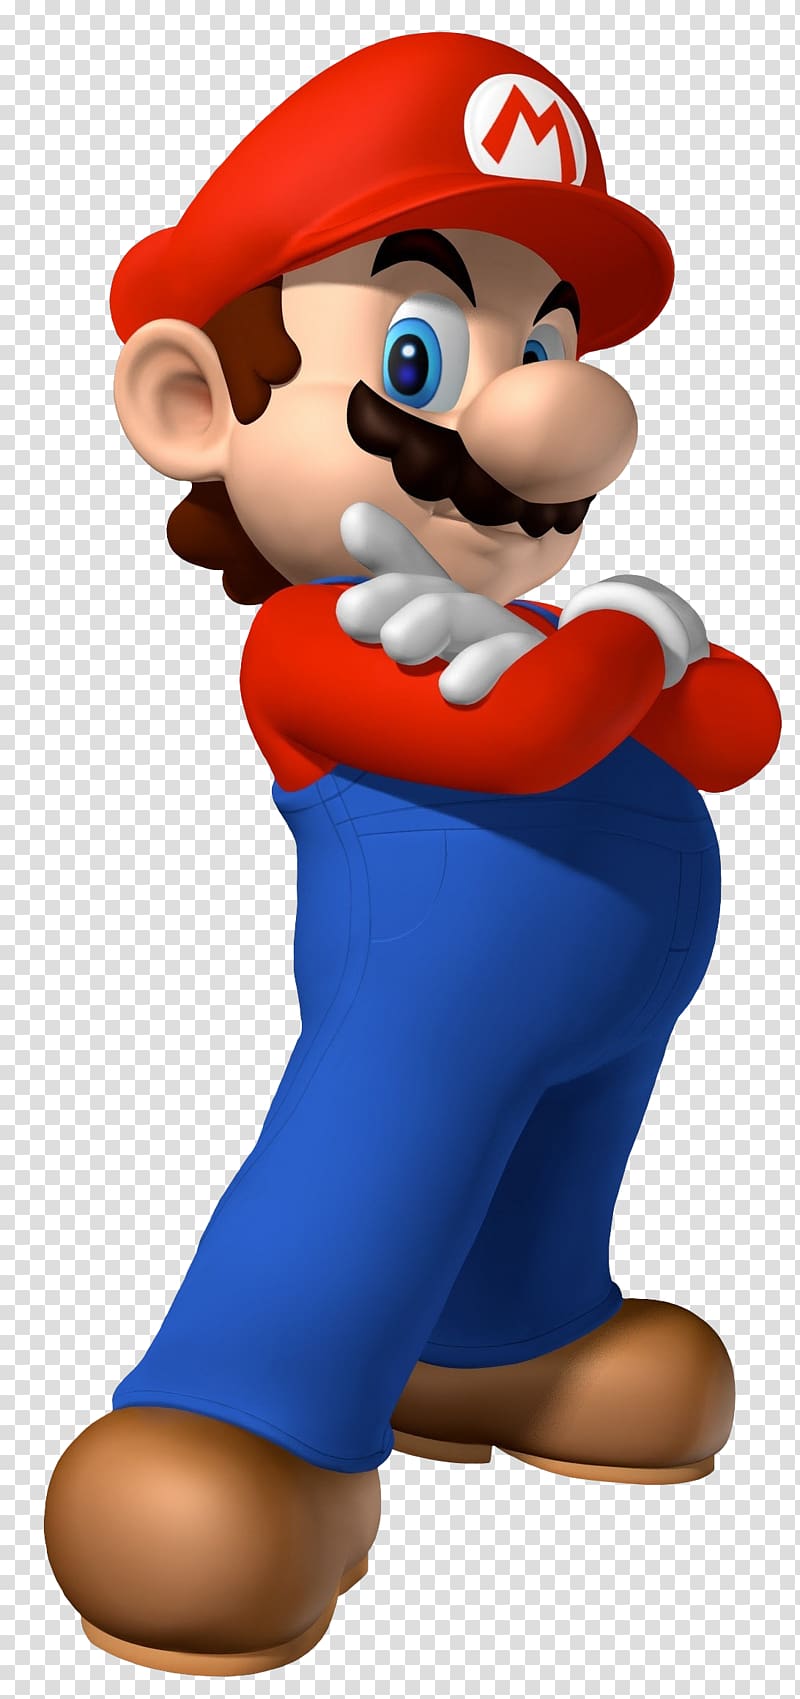 Super Mario Bros. Luigi Wii, mario transparent background PNG clipart